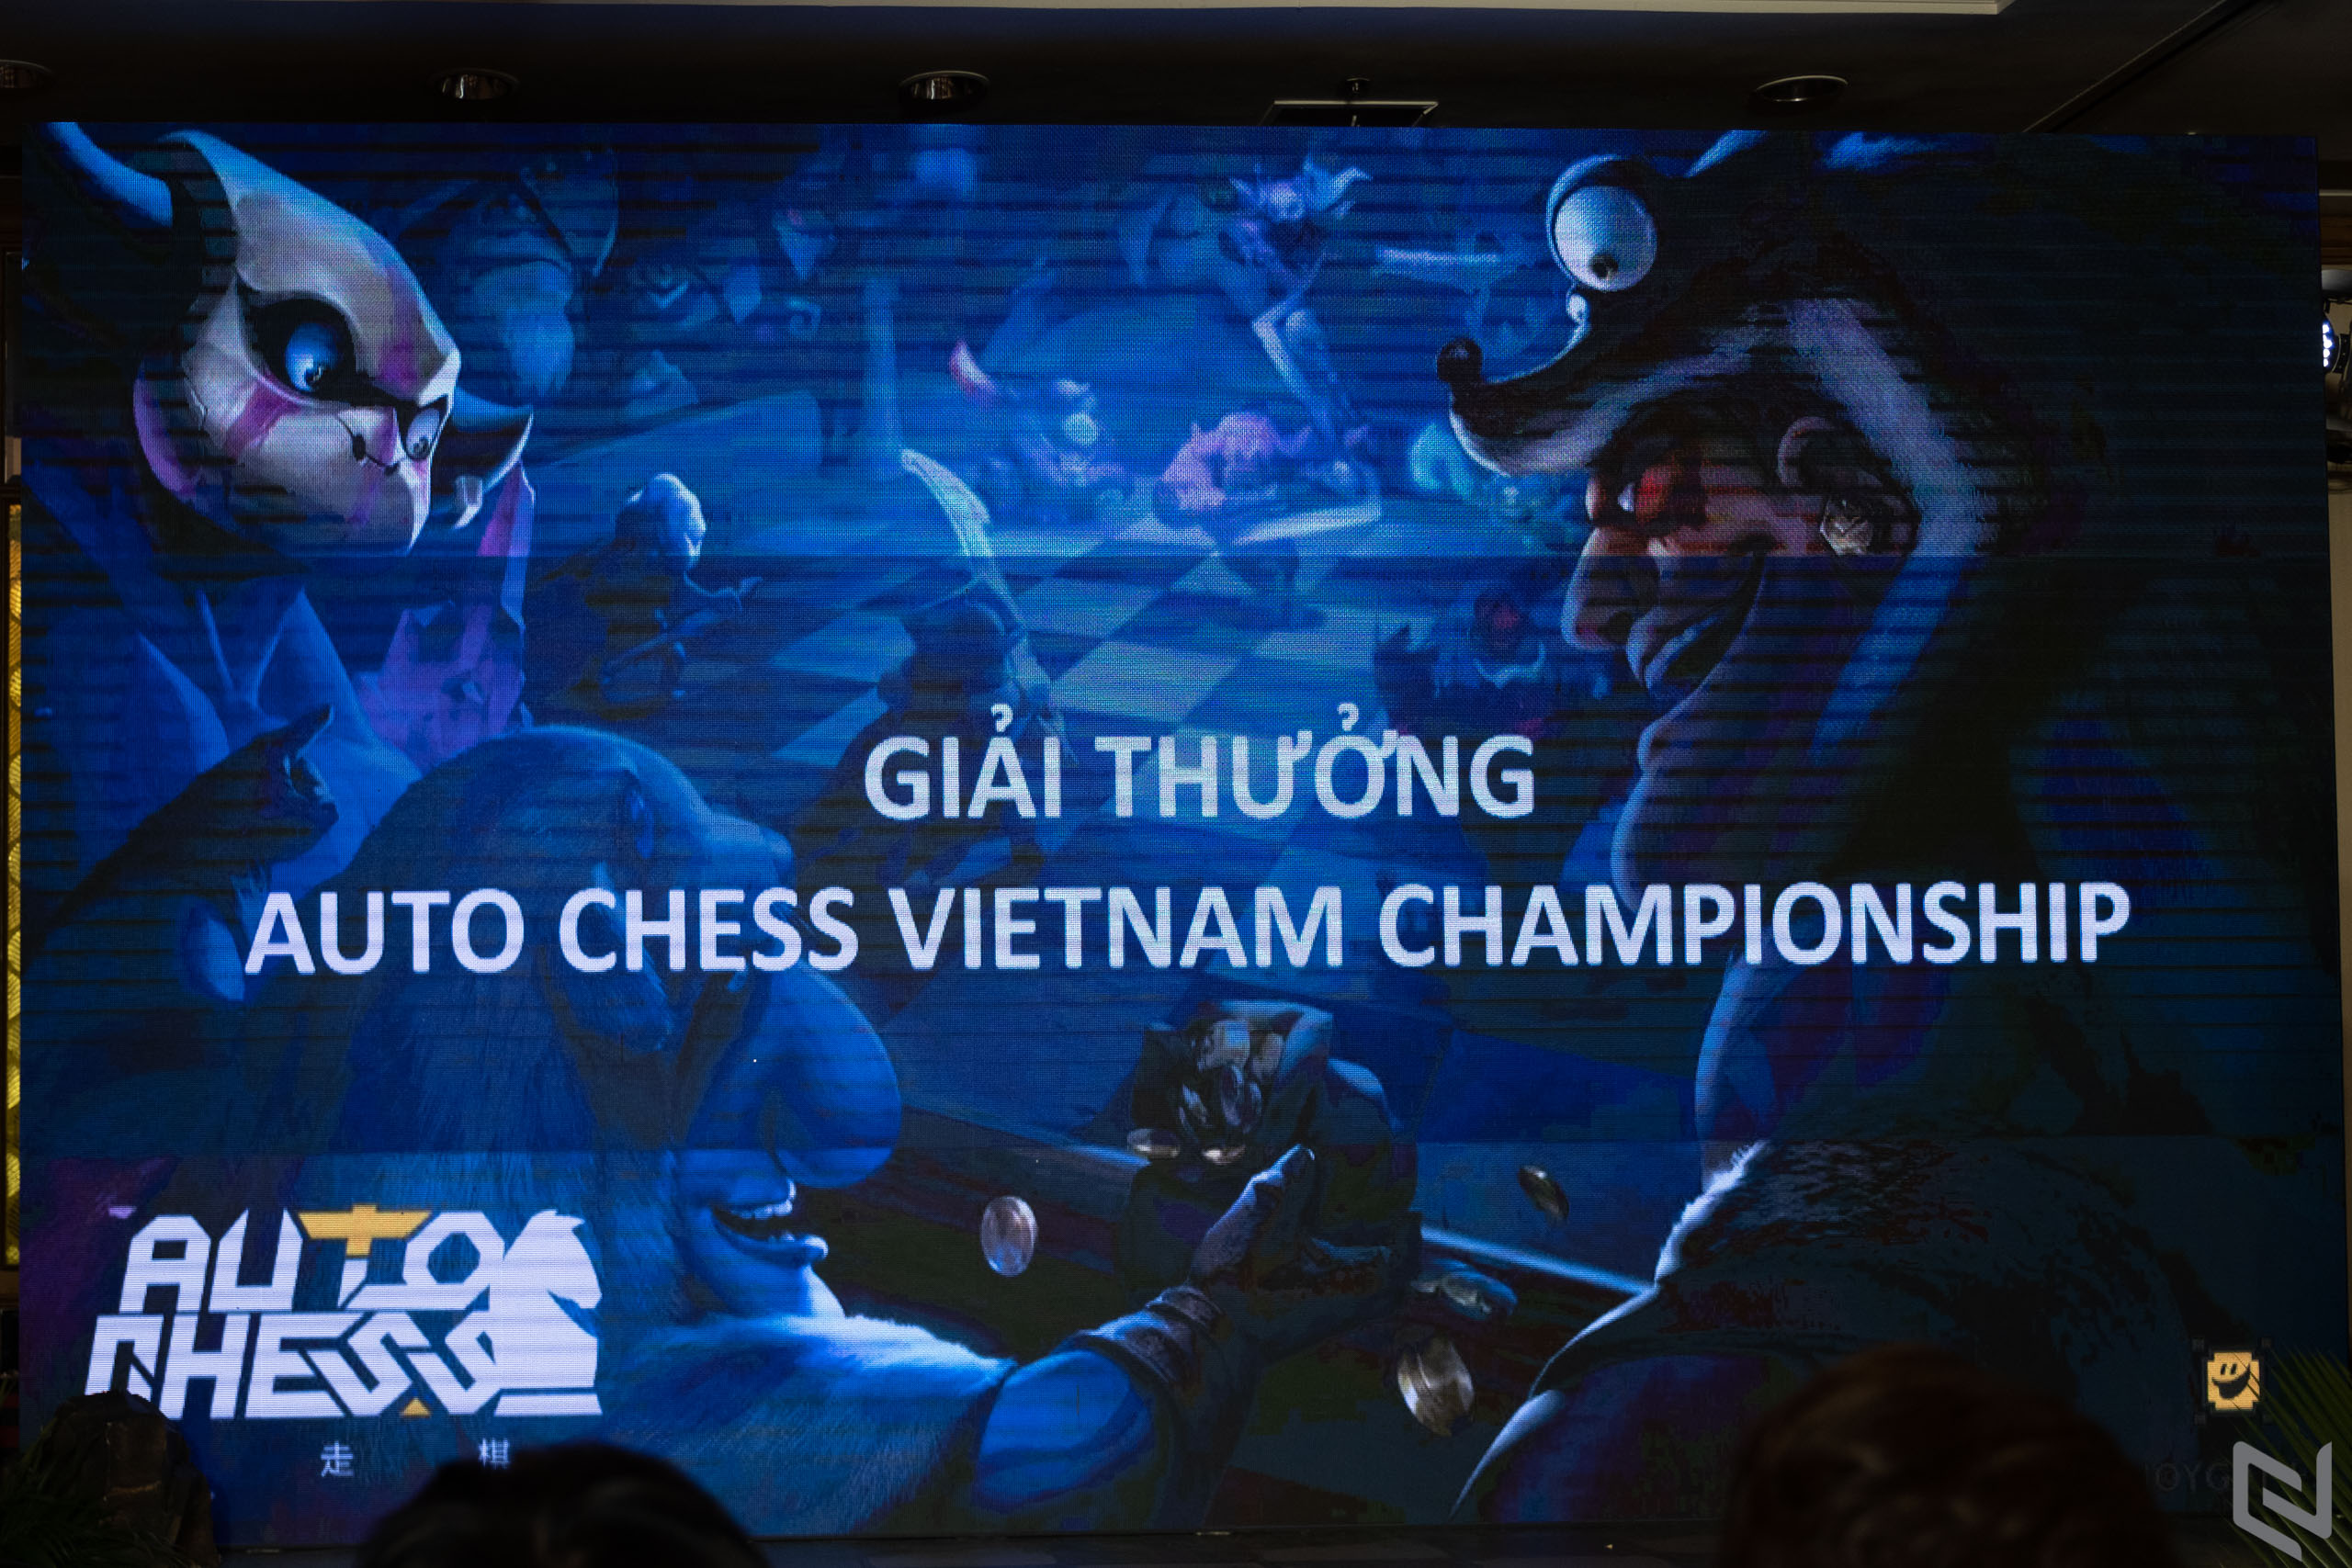 VNG mang cờ nhân phẩm Auto Chess VN về Việt Nam, tổ chức giải đấu cho cờ thủ